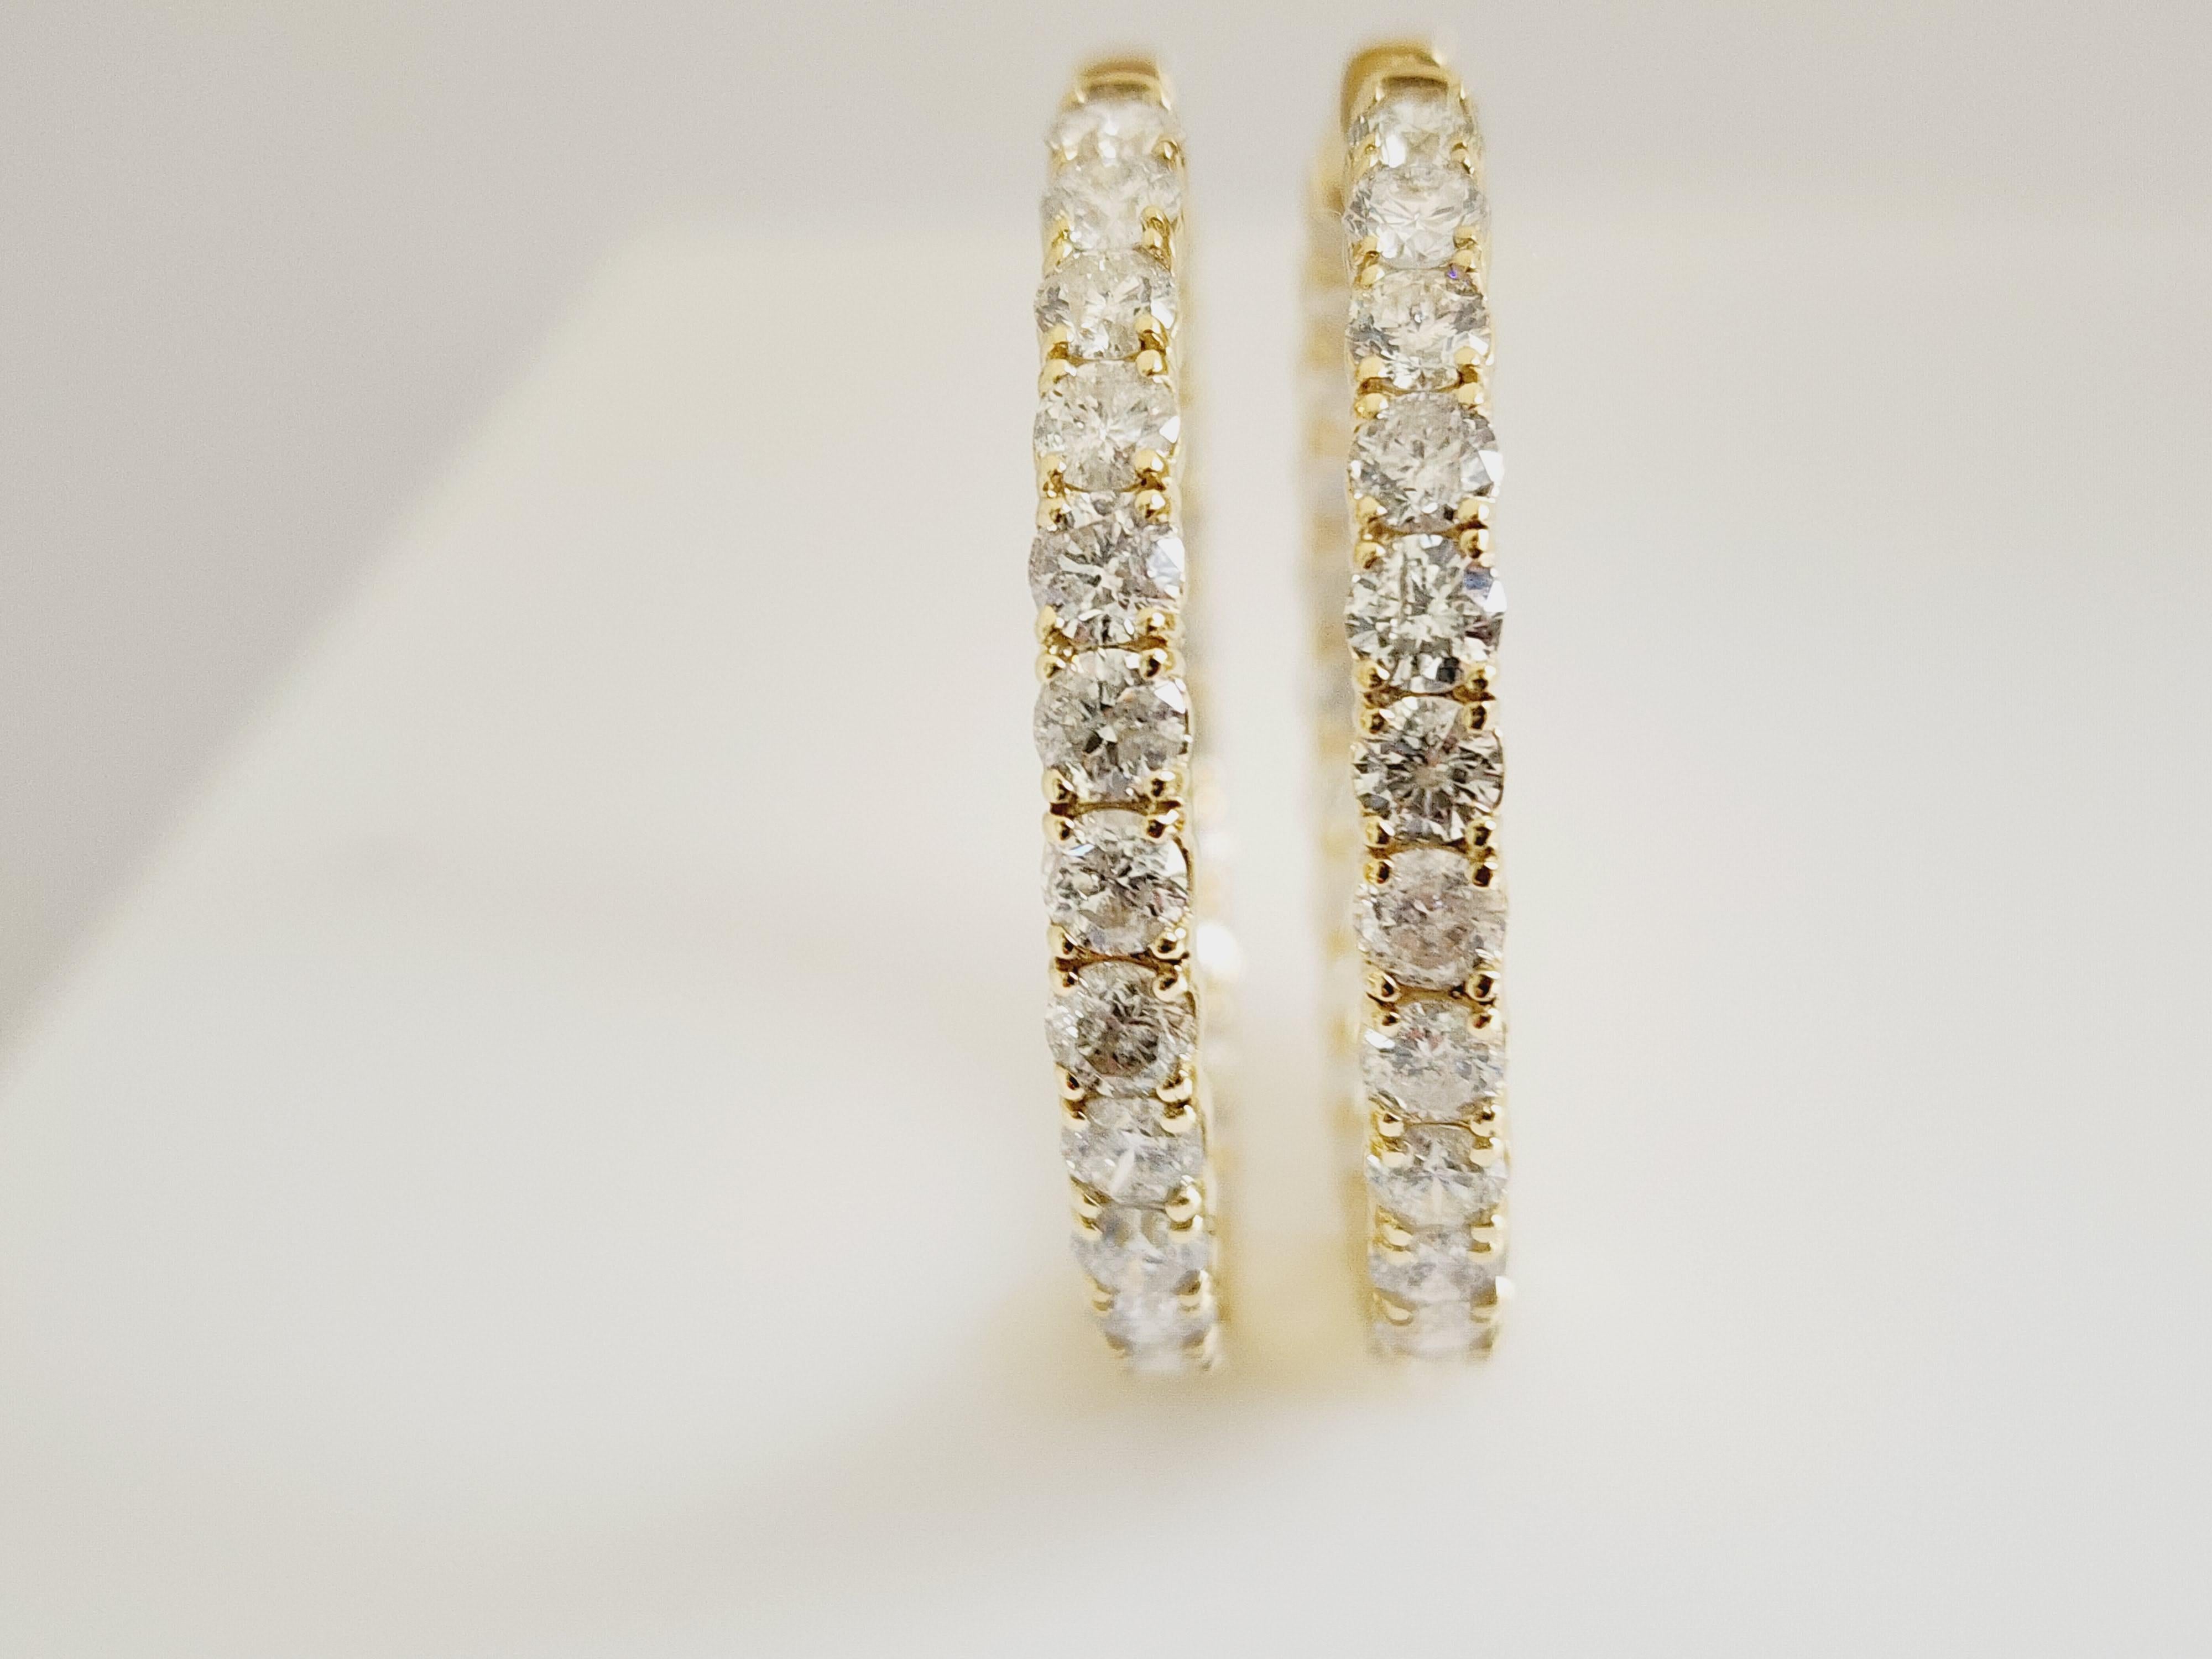 10.1 Carat Diamond Hoops Earrings 14 Karat Yellow Gold For Sale 1